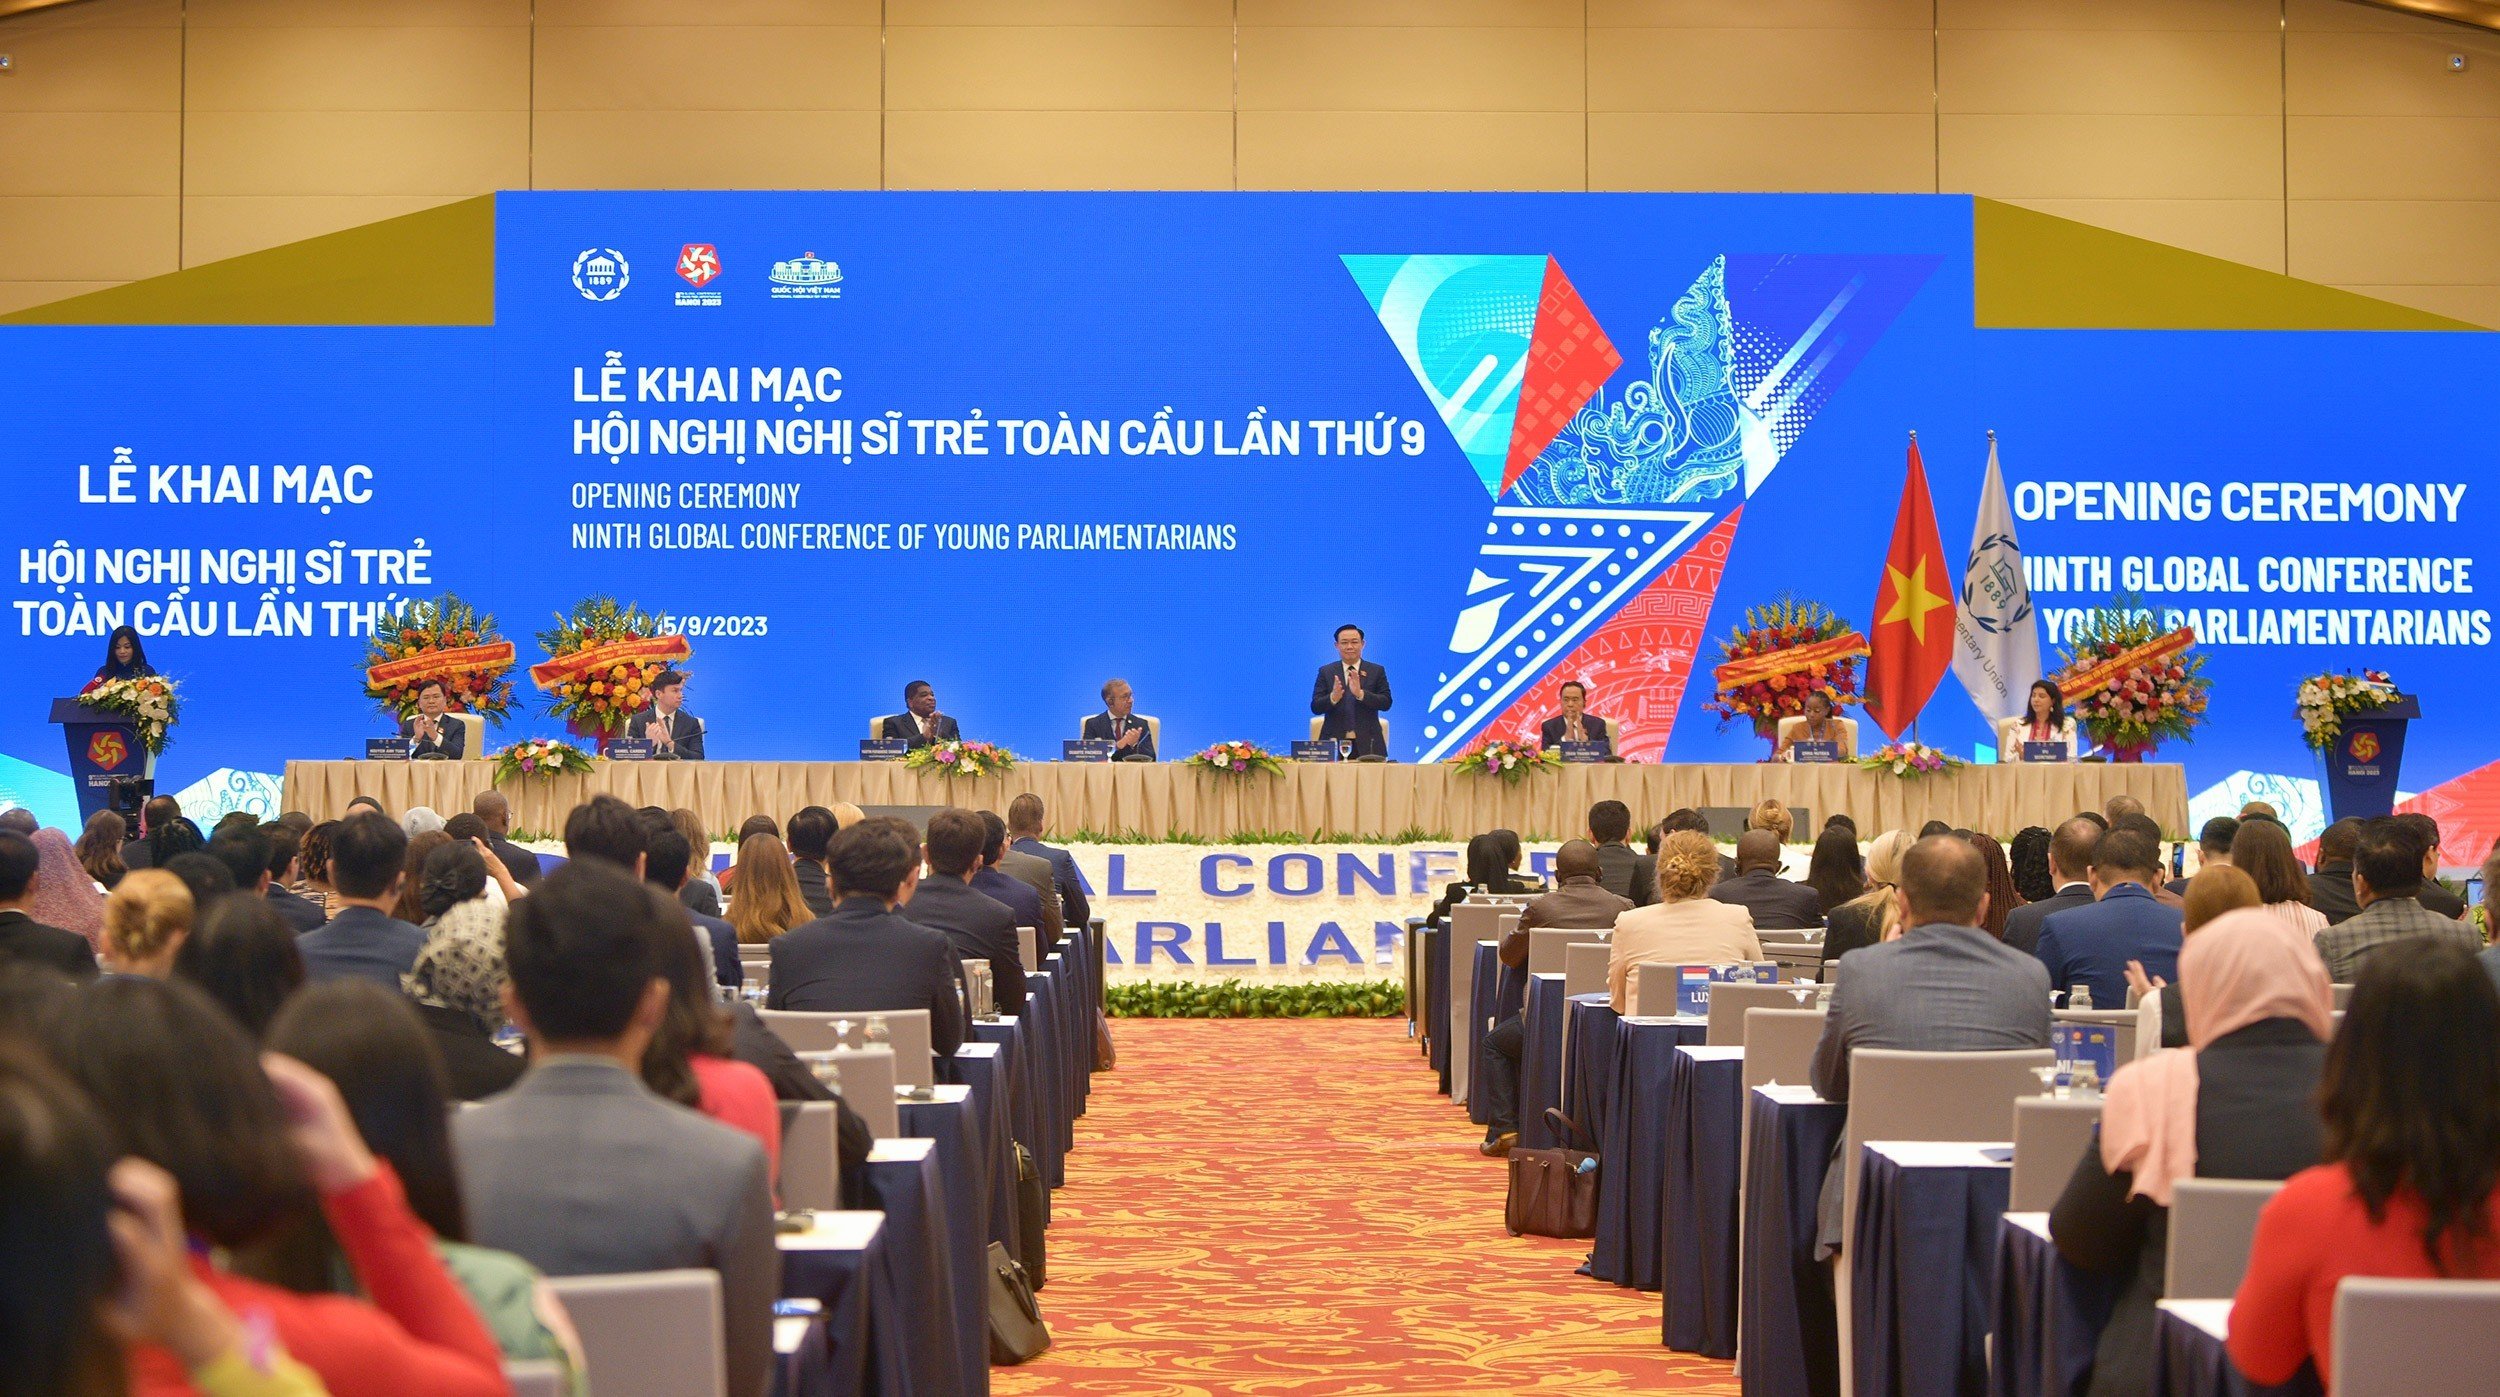 Toàn cảnh Phiên khai mạc Hội nghị Nghị sĩ trẻ toàn cầu lần thứ 9.